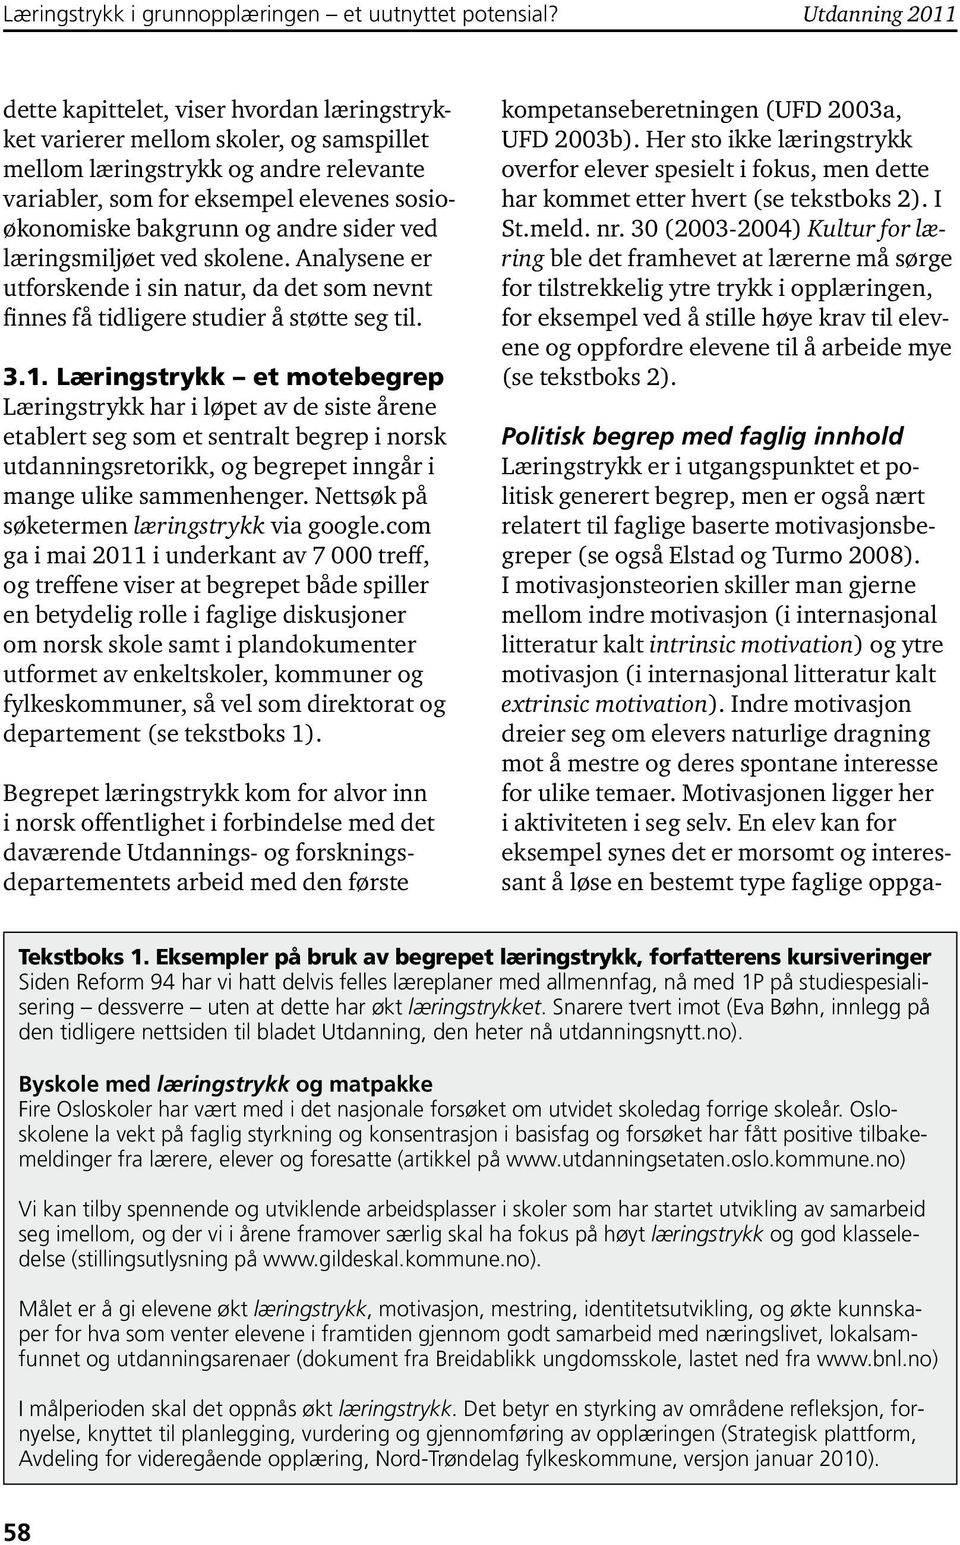 . Læringstrykk et motebegrep Læringstrykk har i løpet av de siste årene etablert seg som et sentralt begrep i norsk utdanningsretorikk, og begrepet inngår i mange ulike sammenhenger.